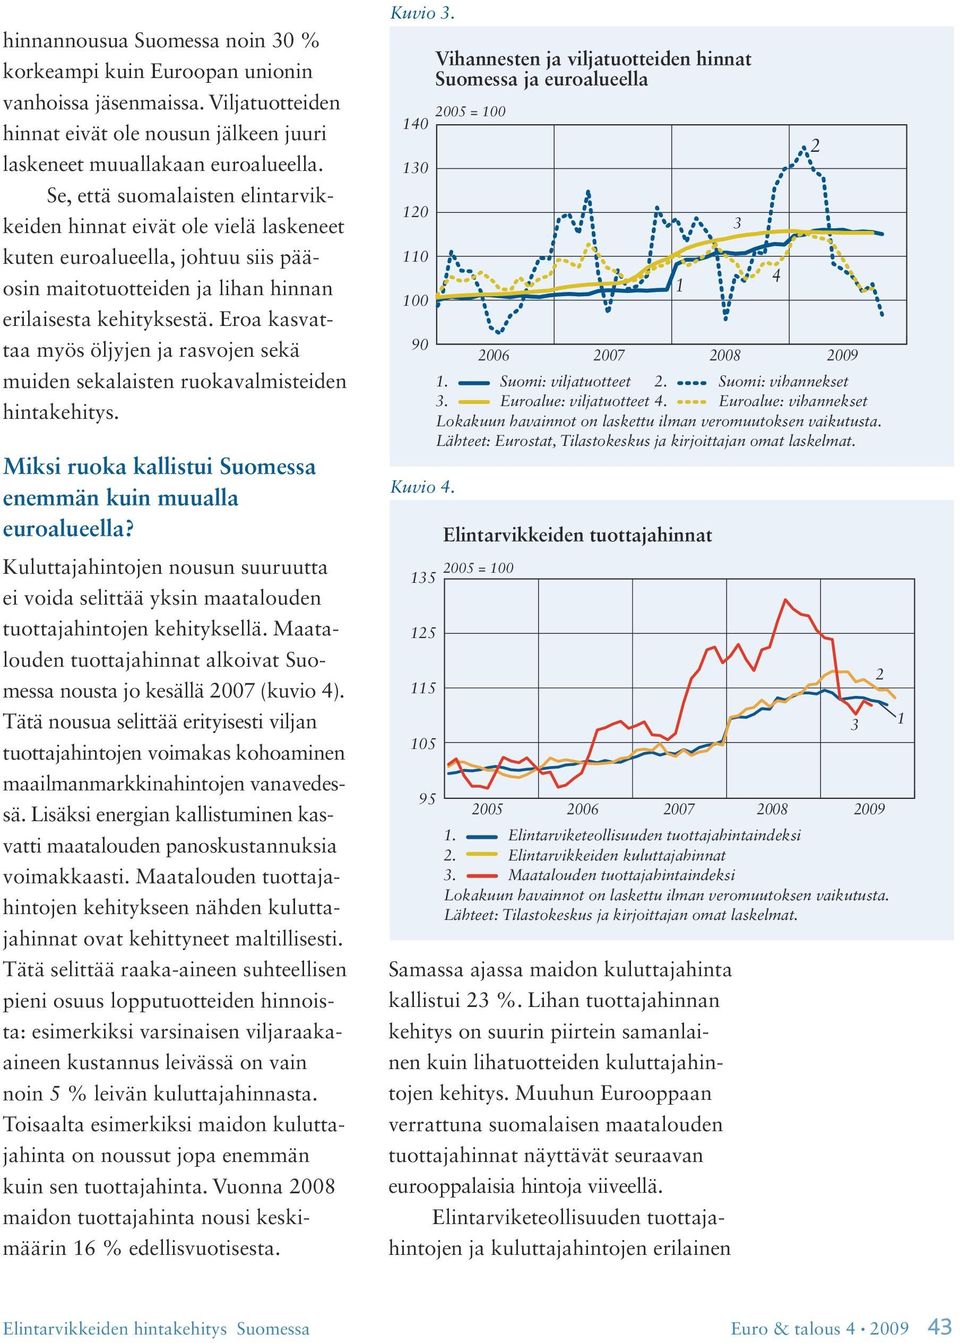 Eroa kasvattaa myös öljyjen ja rasvojen sekä muiden sekalaisten ruokavalmisteiden hintakehitys. Miksi ruoka kallistui Suomessa enemmän kuin muualla euroalueella?